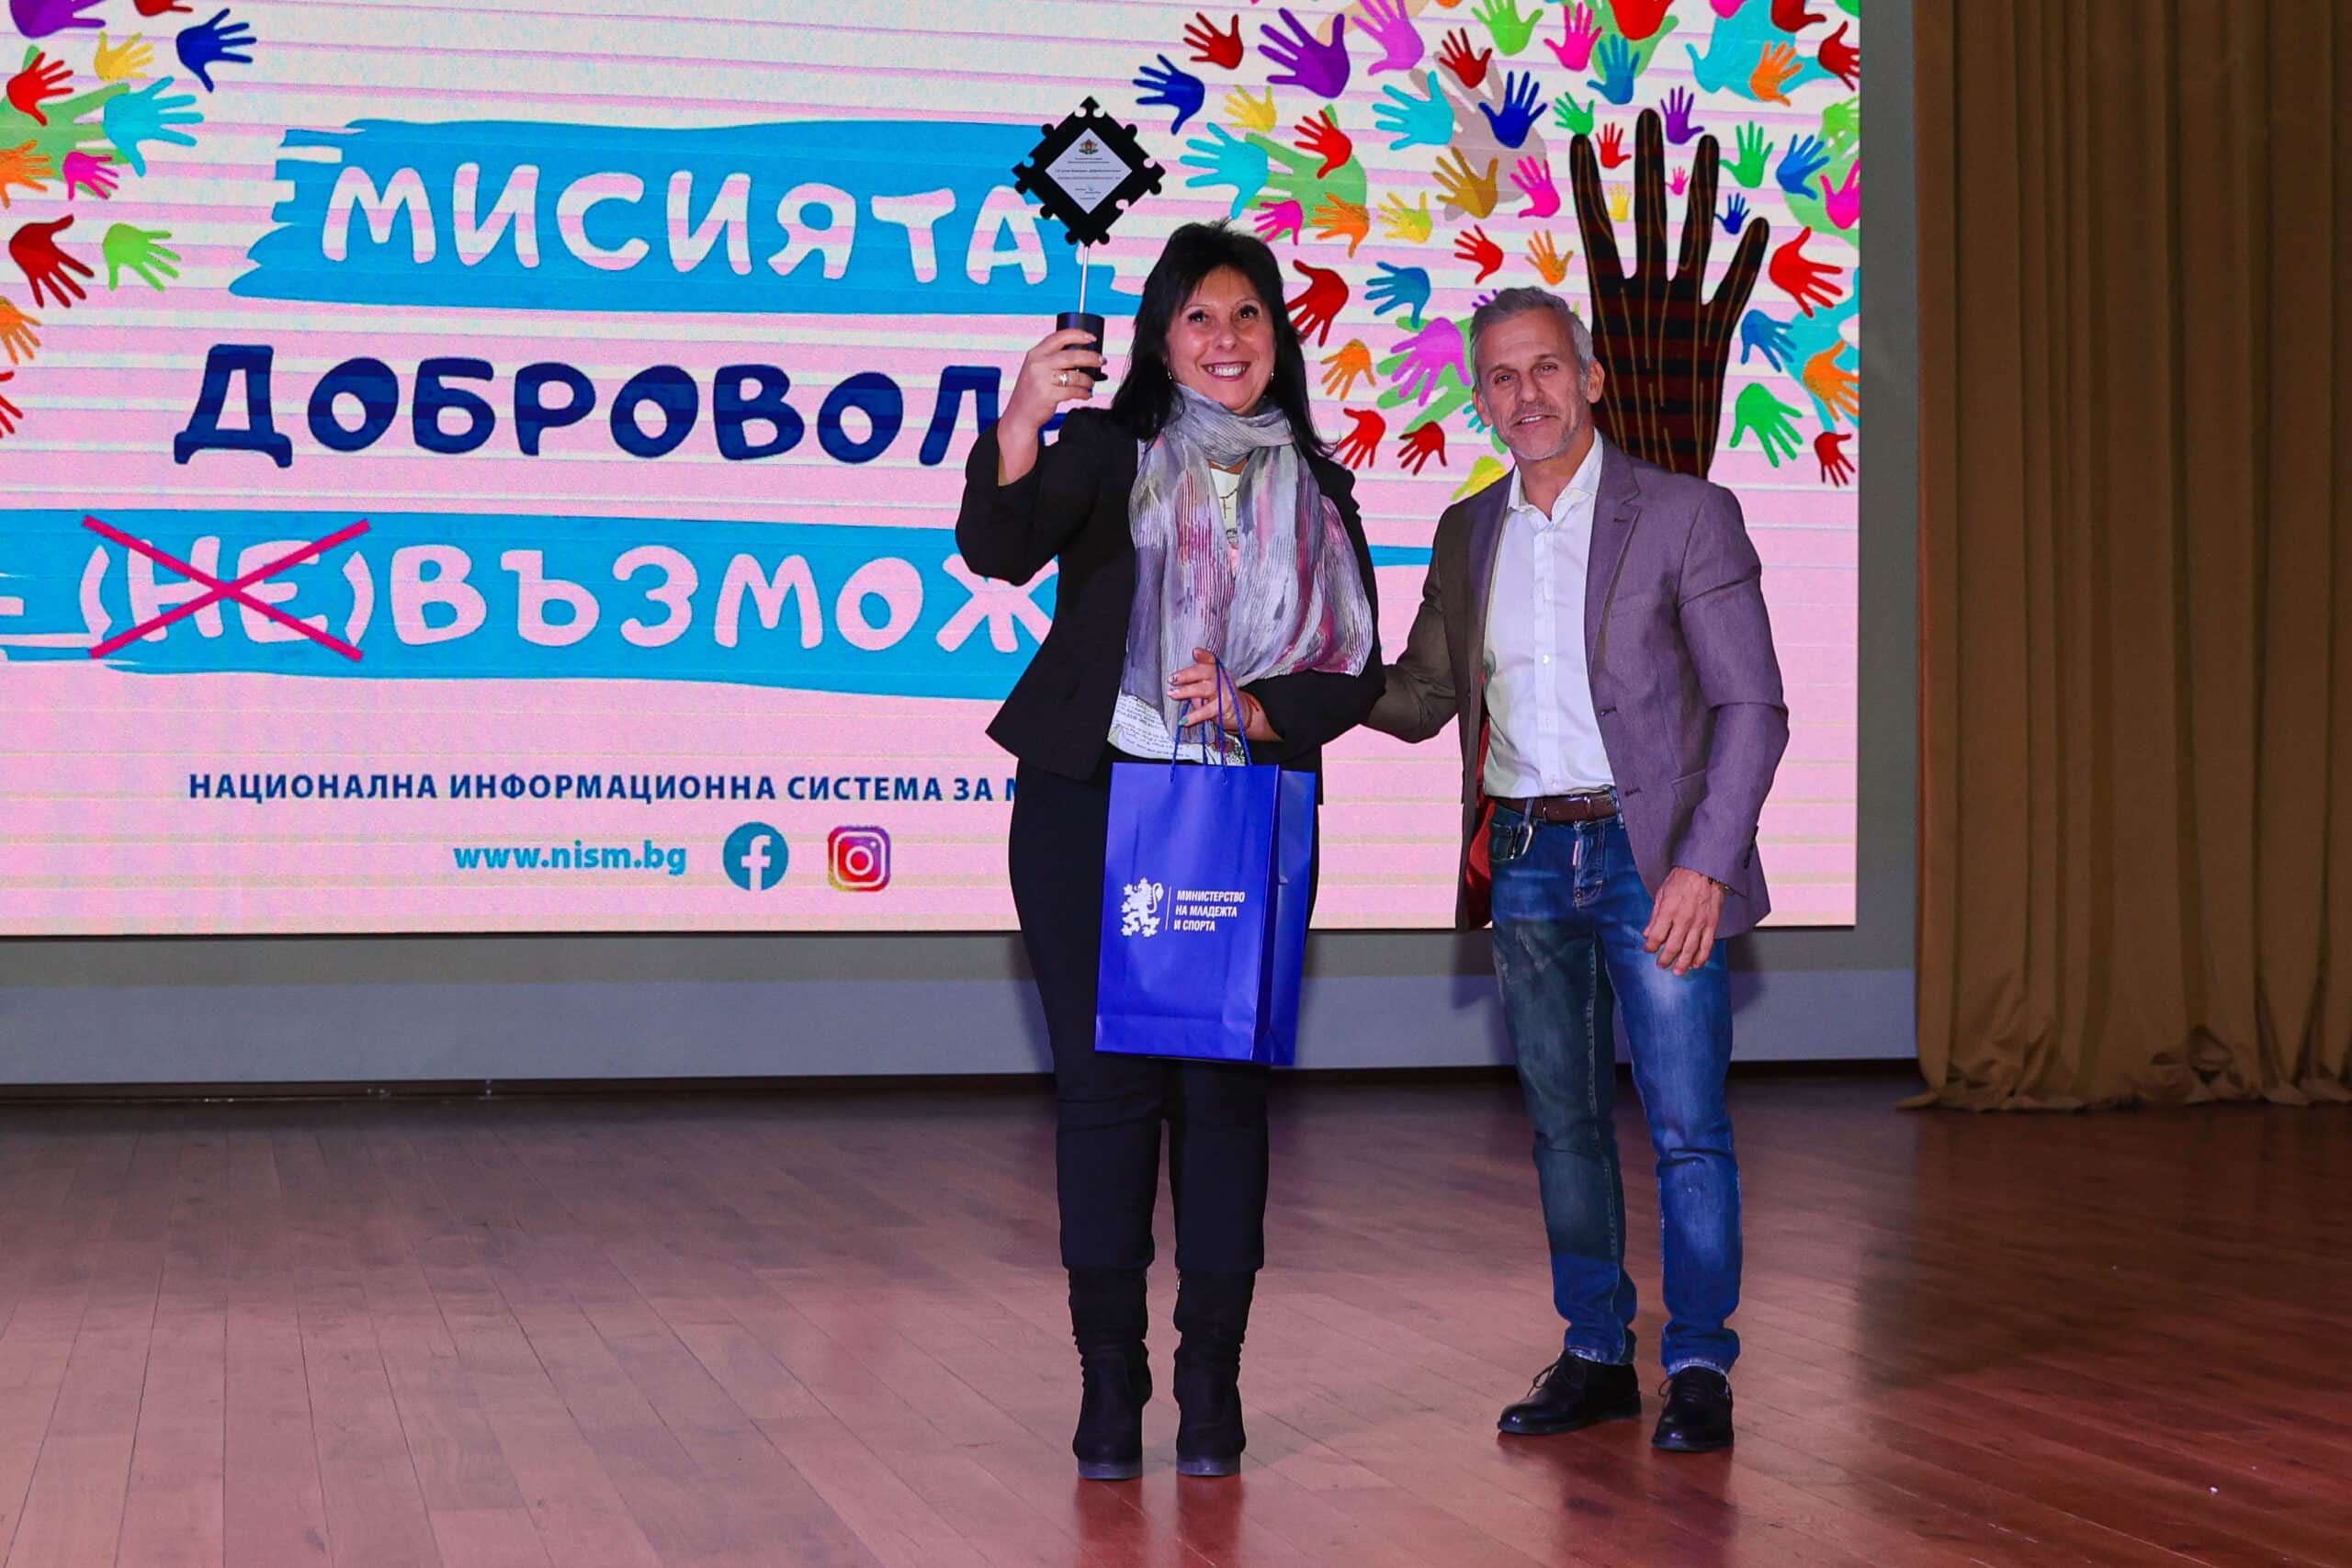 Доброволчеството дава възможност на младите хора на България да демонстрират